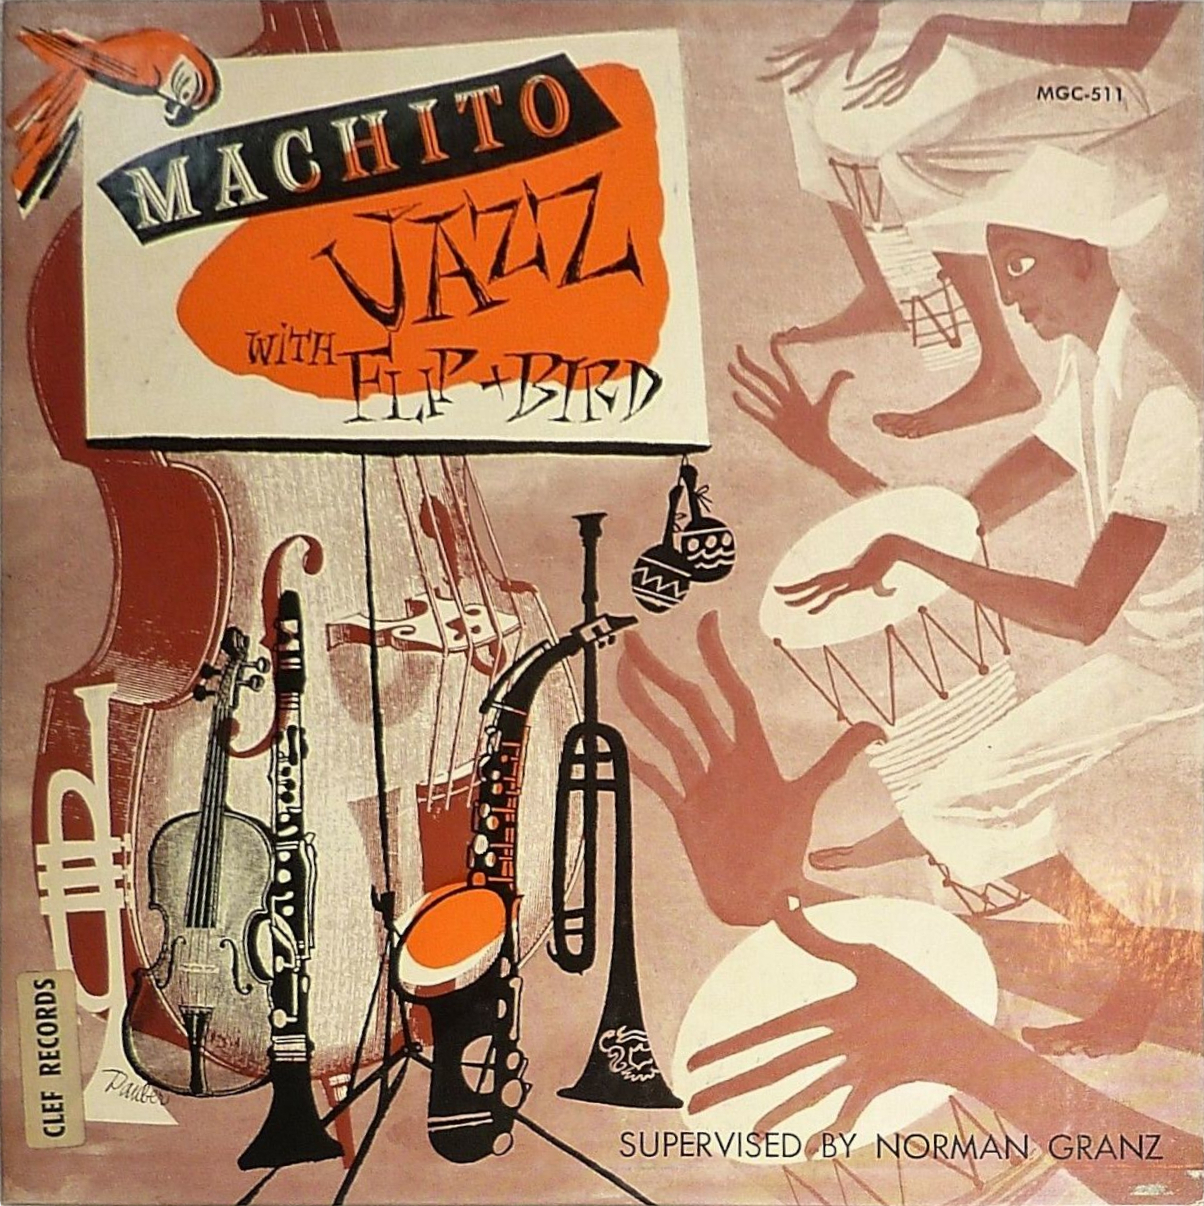 Machito jazz with flip side